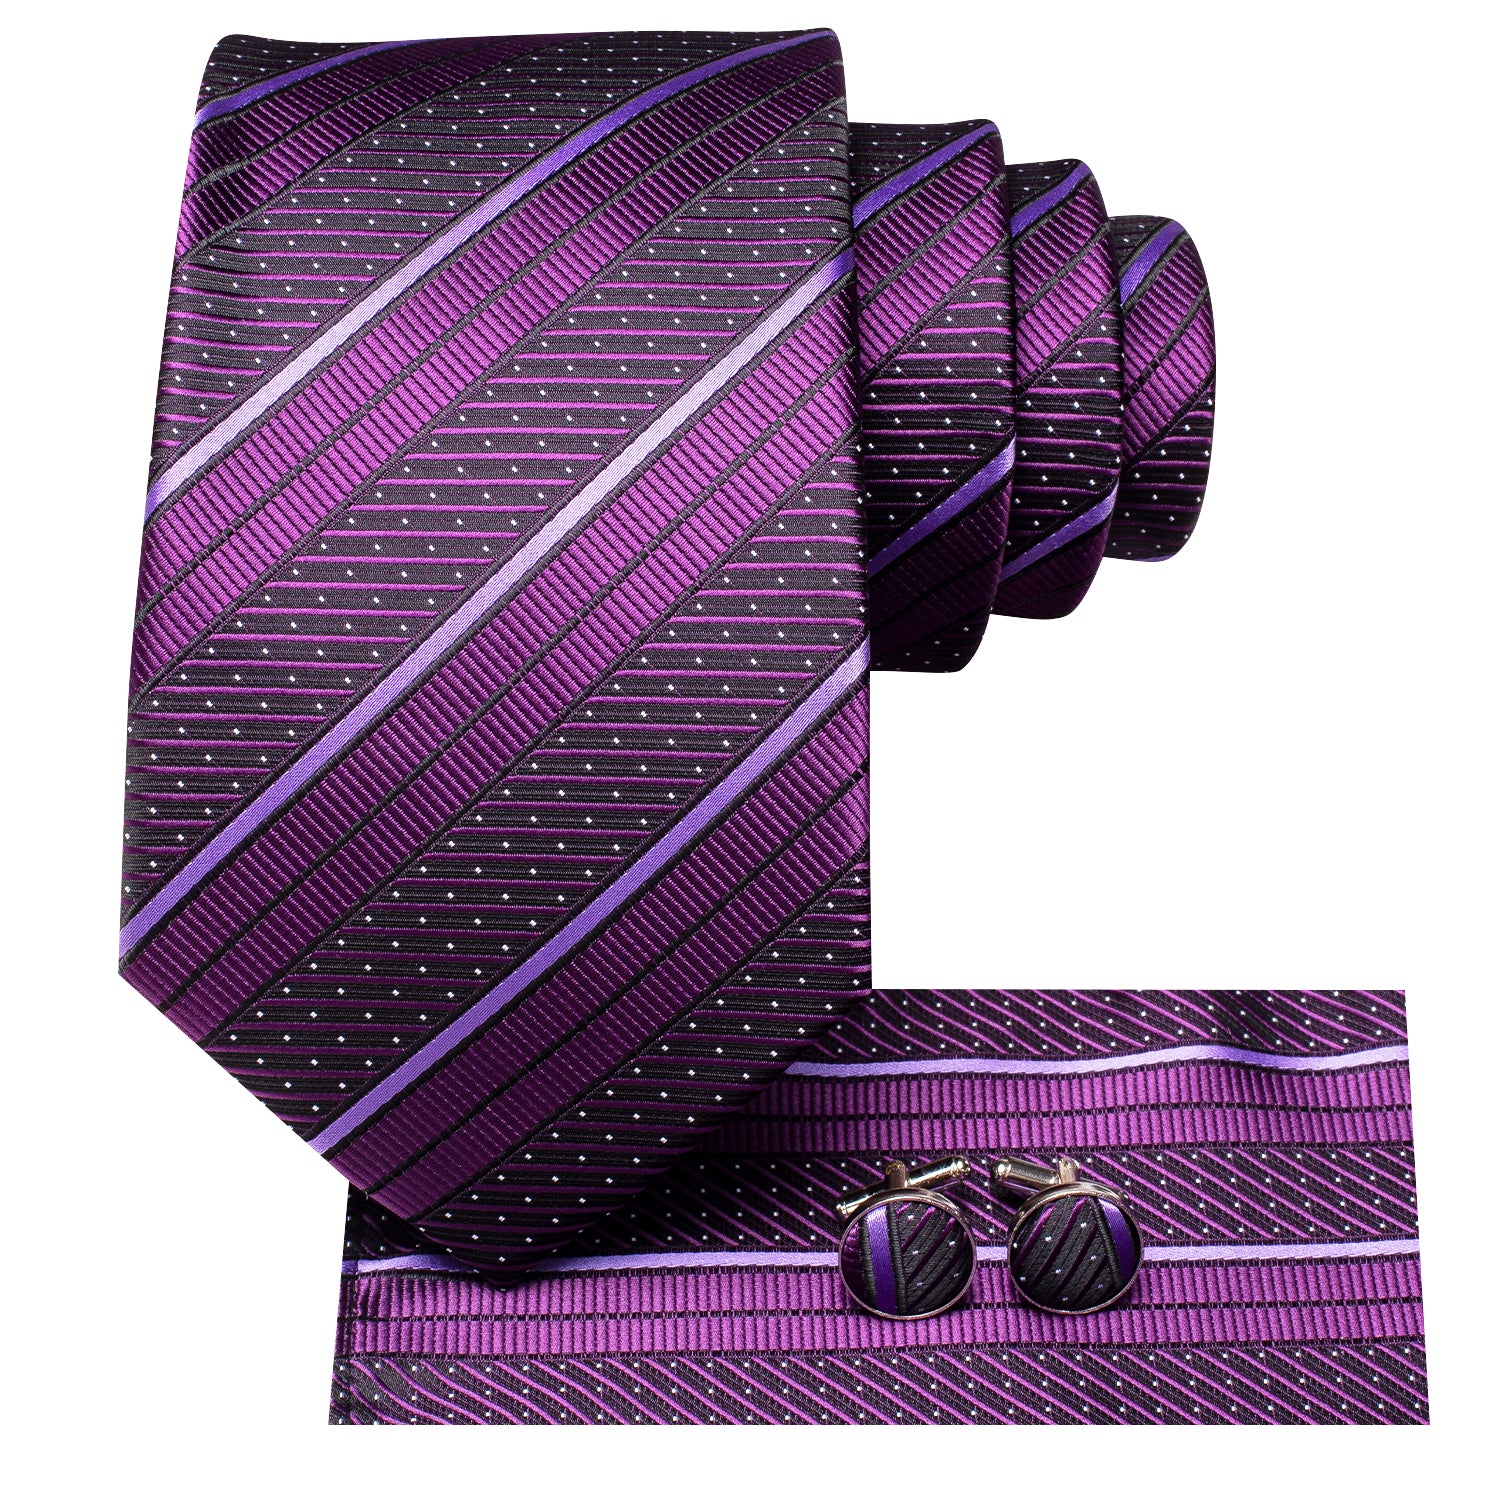 New Purple White Strip Tie Pocket Square Cufflinks Set